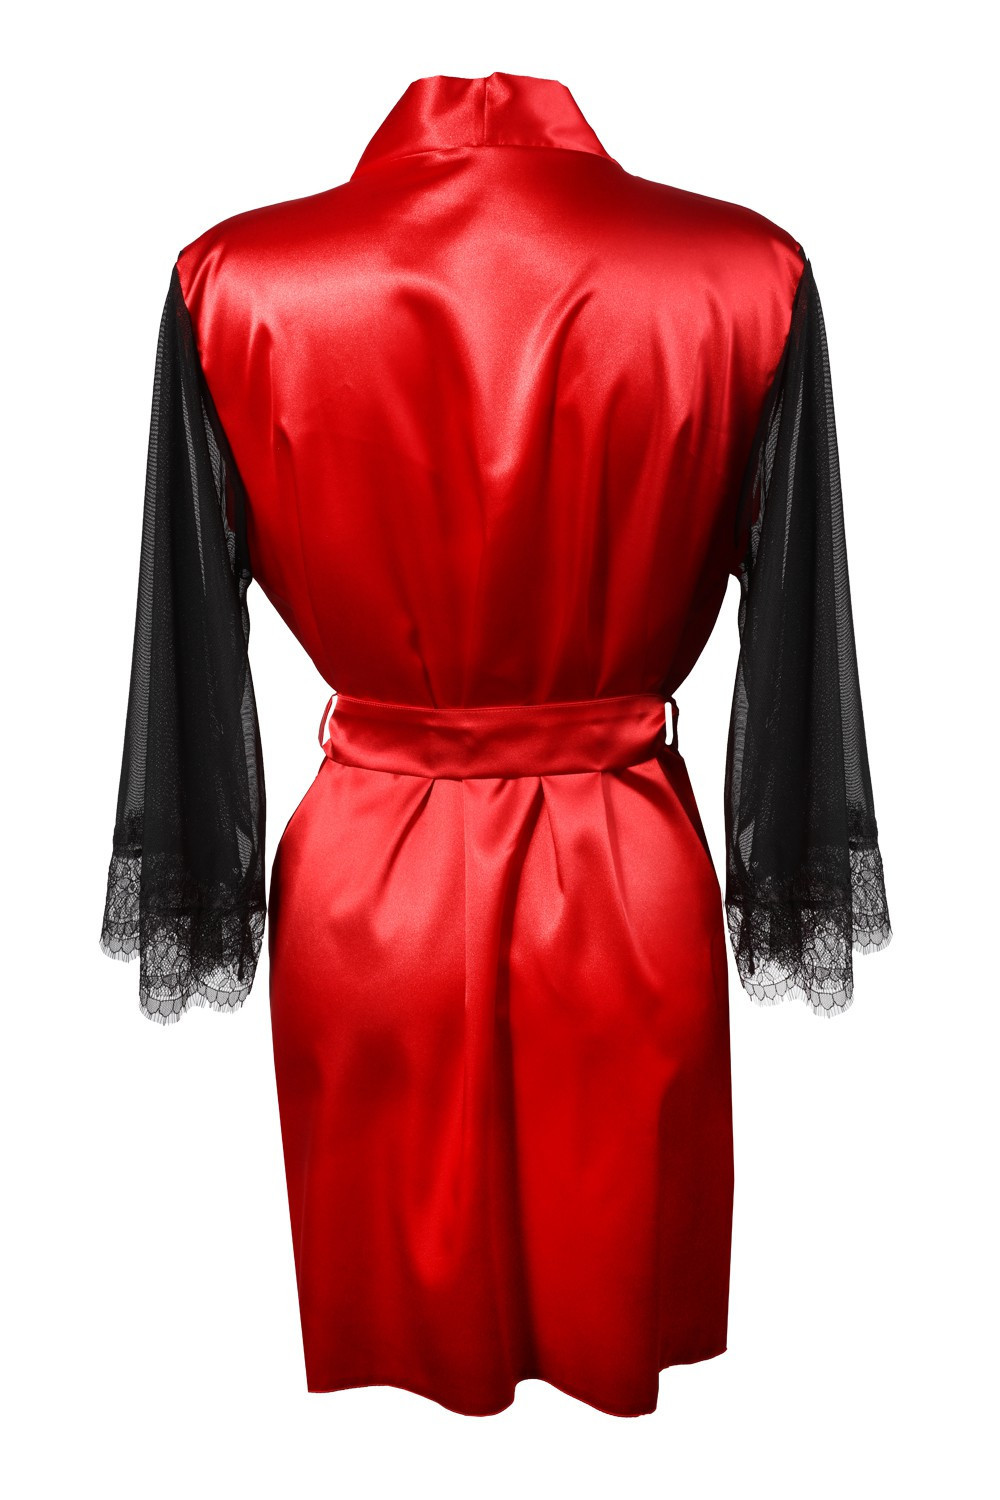 Housecoat model 18227296 Red - DKaren Velikost: S, Barva: červená